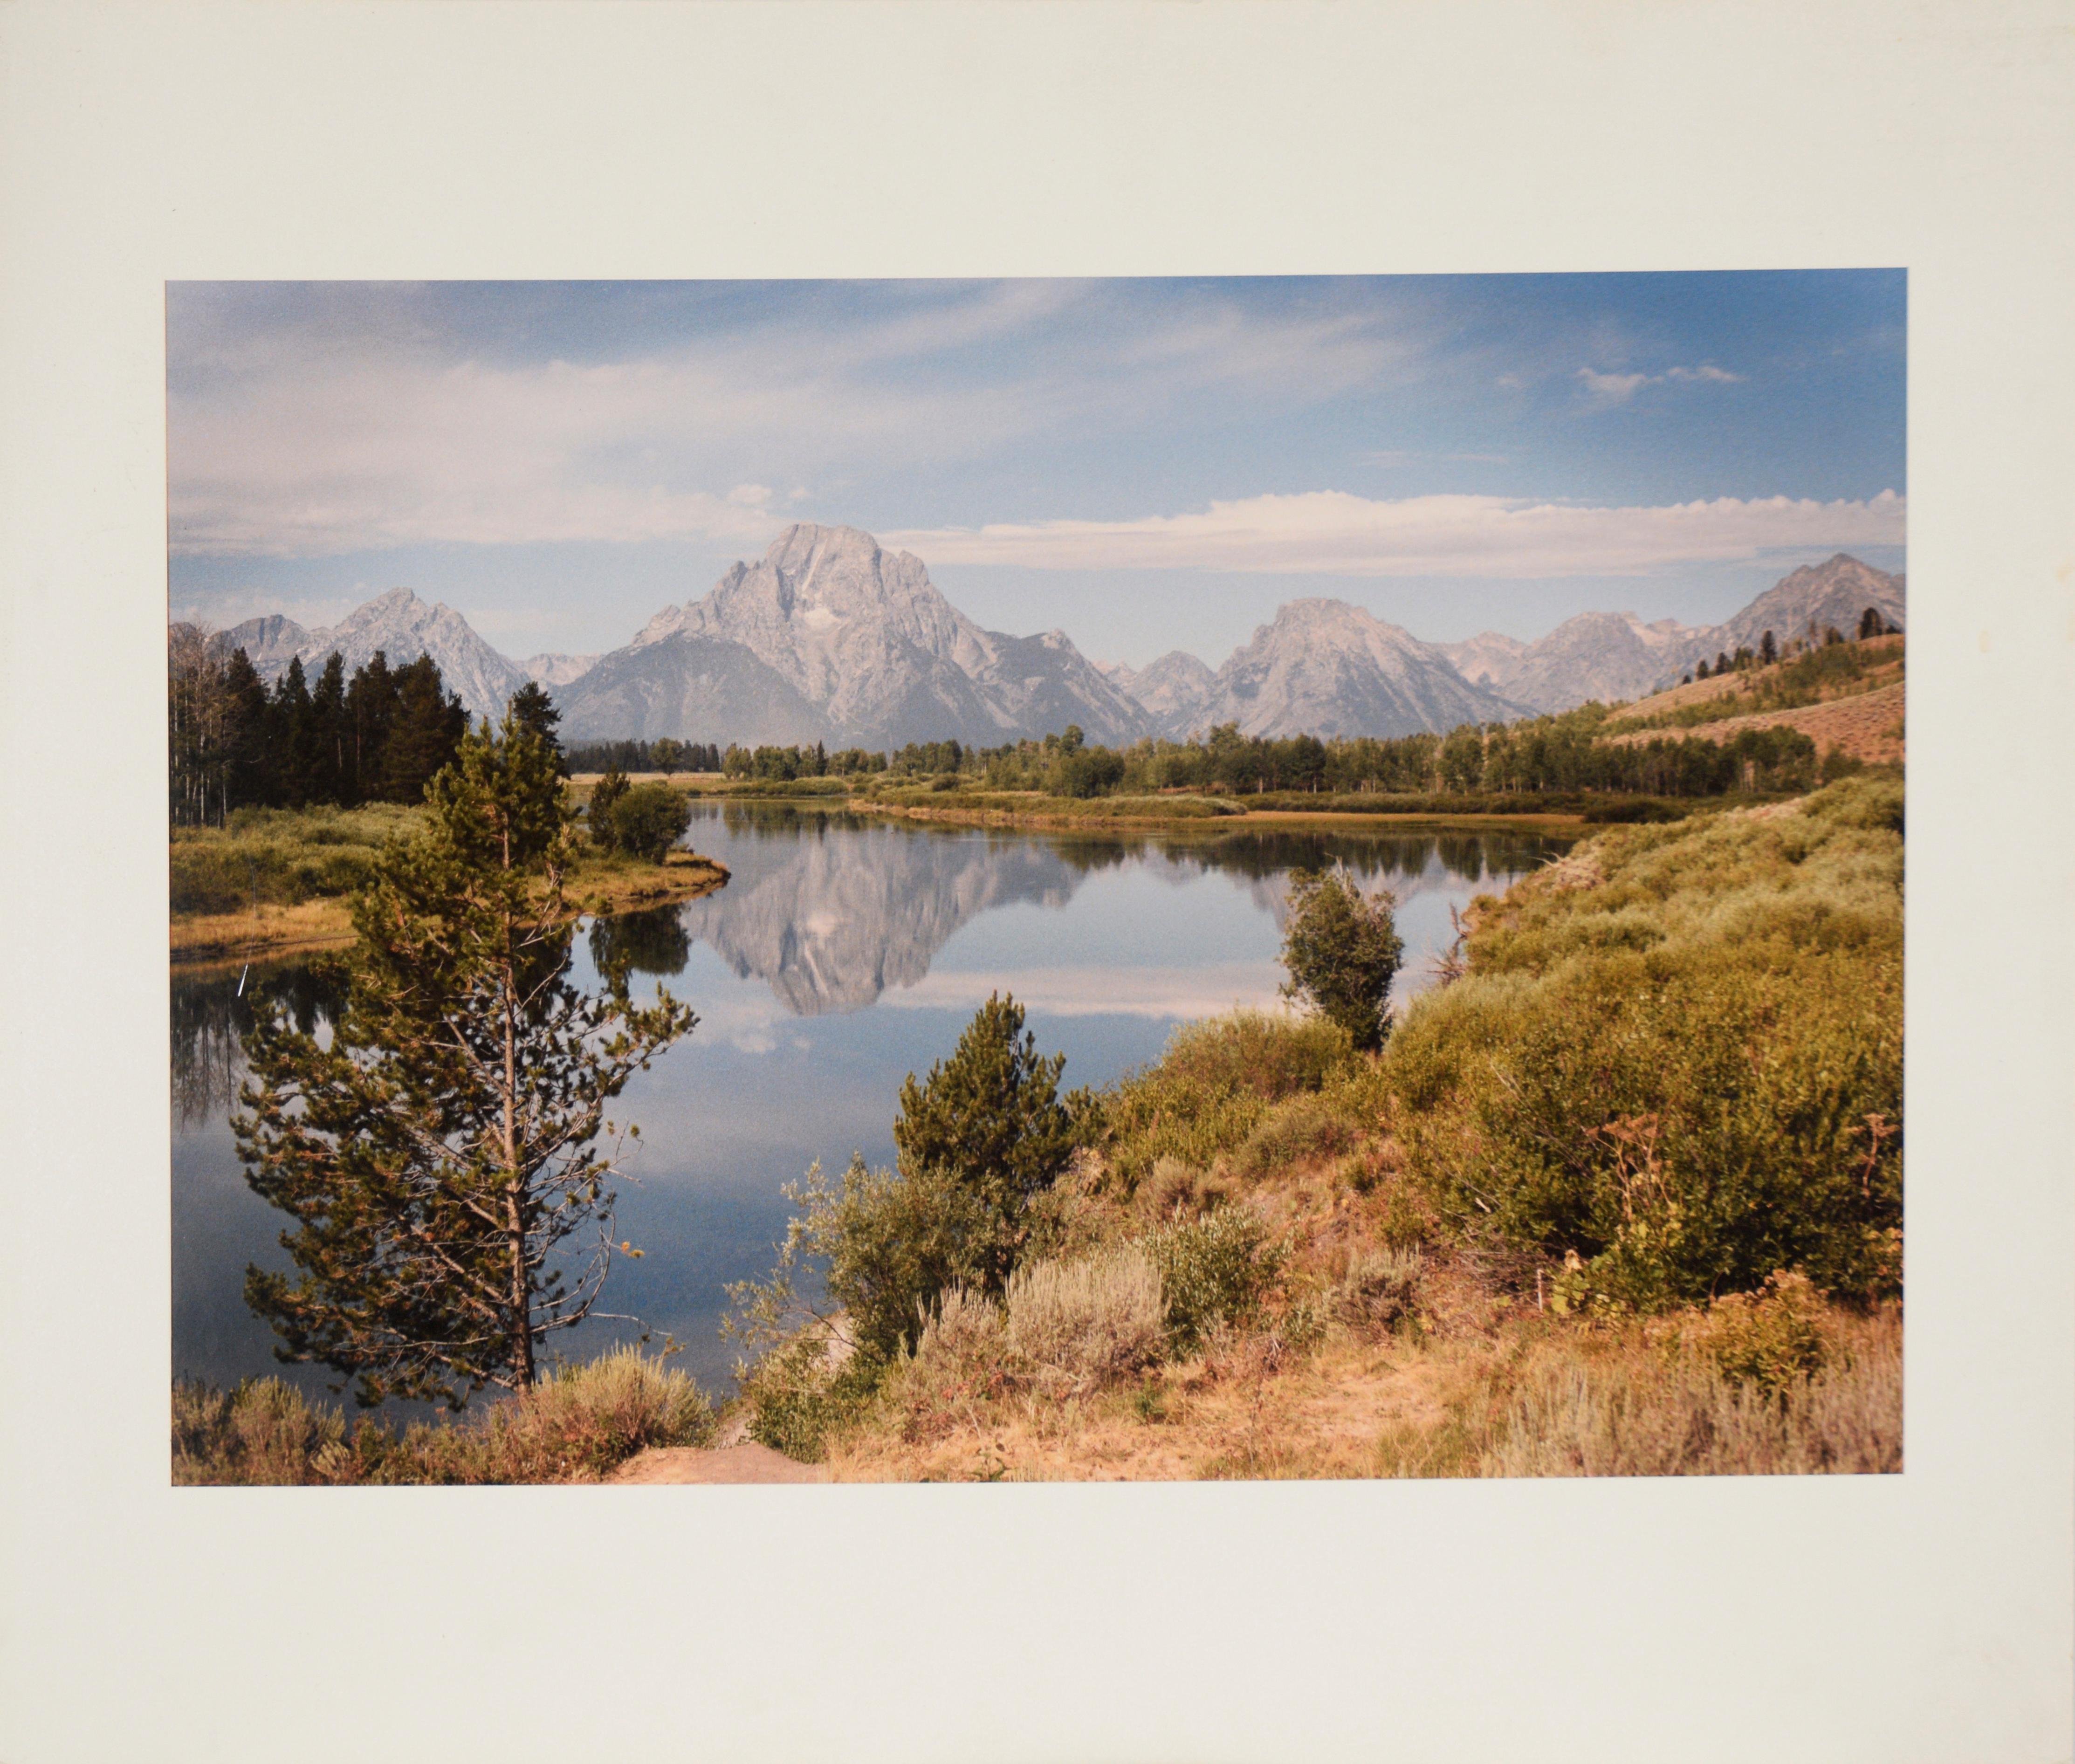 Unknown Landscape Photograph - Grand Teton National Park - Original 1988 Photograph